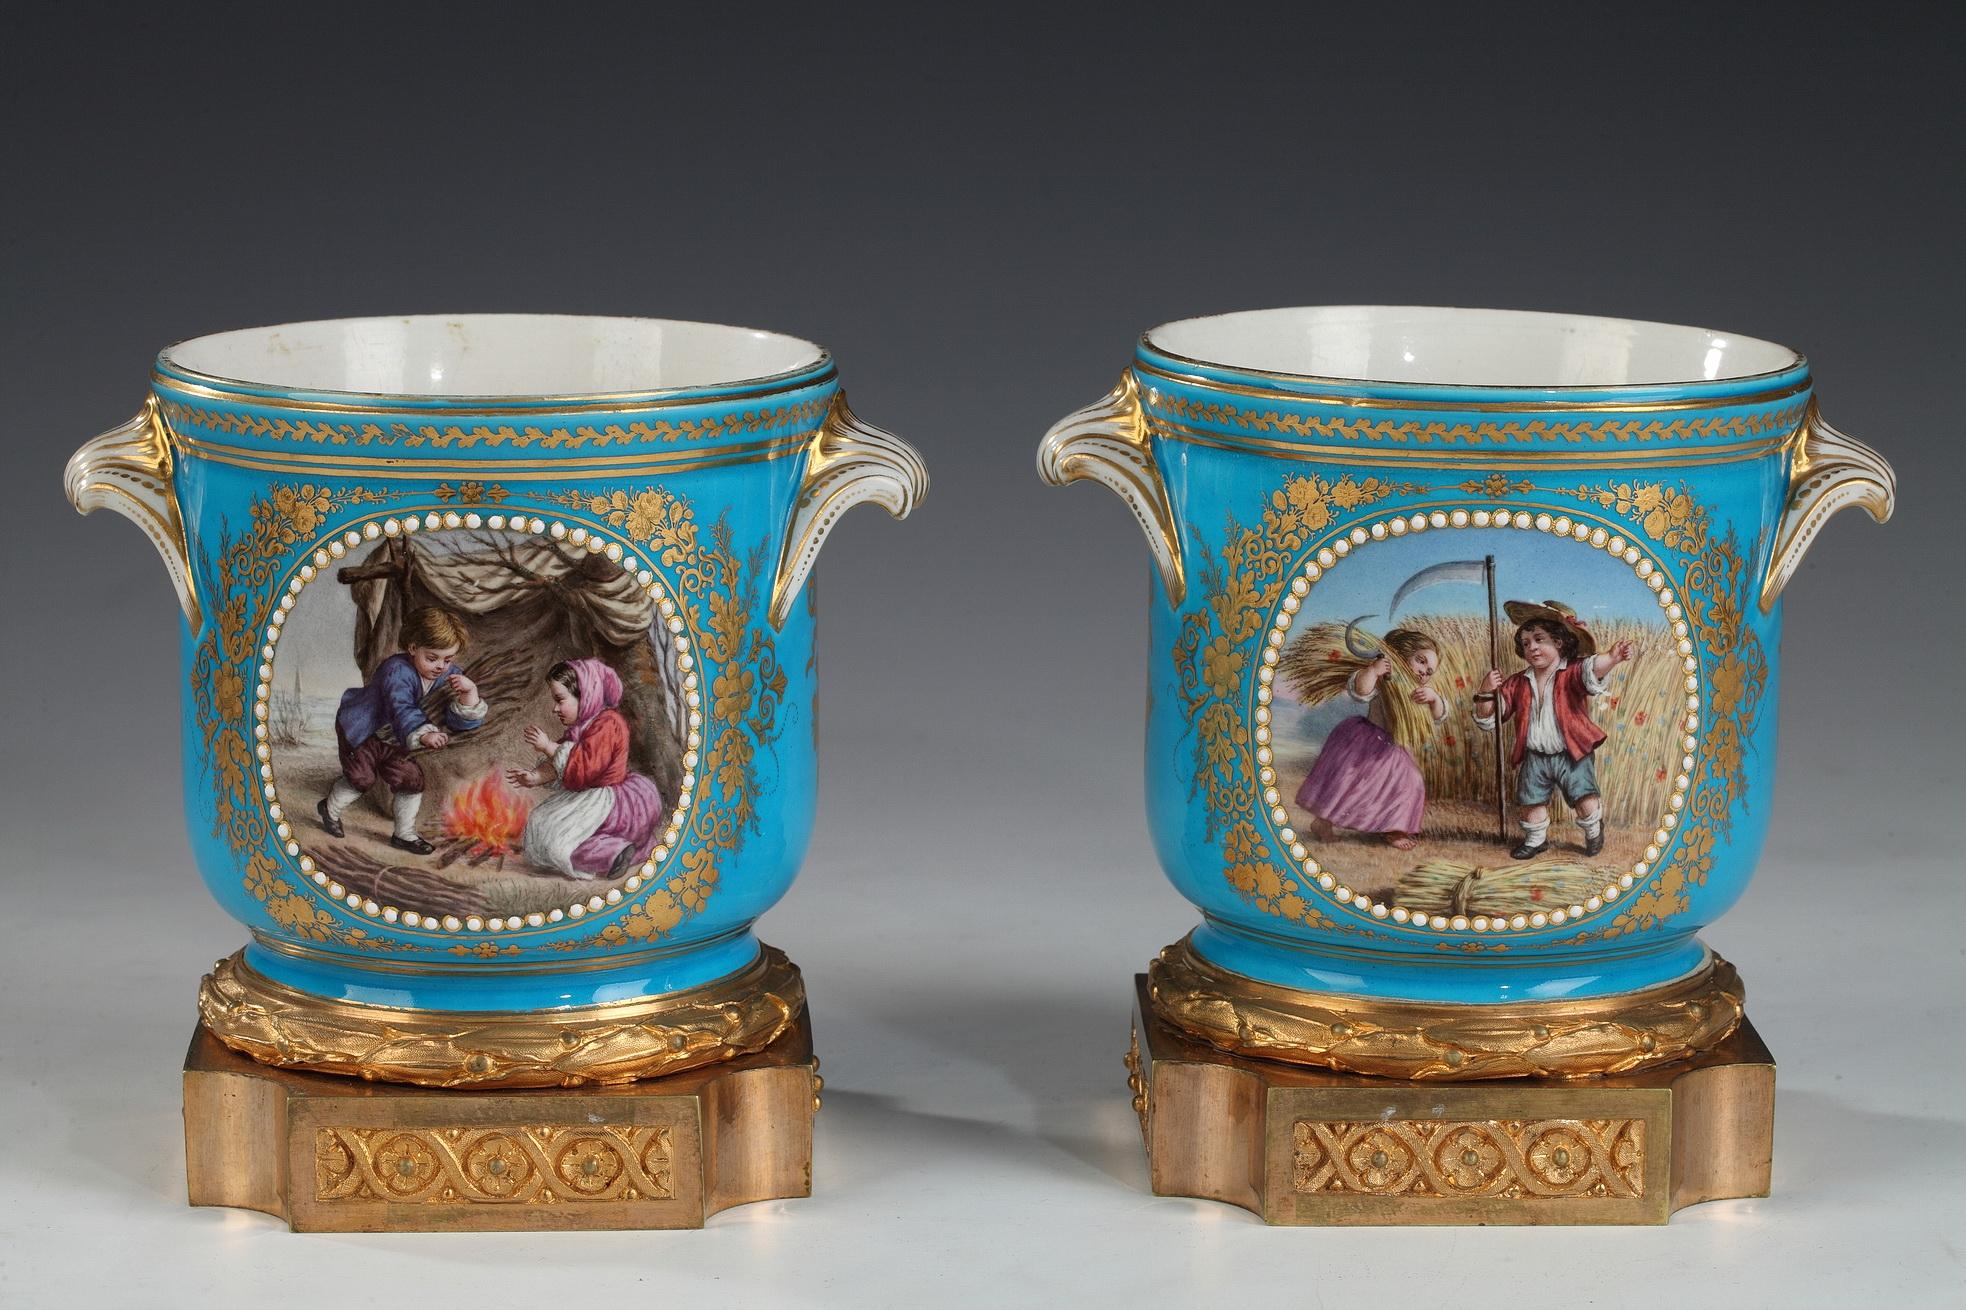 Paar Porzellan-Glaskühler mit gemalten Medaillons und vergoldeten Ornamenten auf türkisblauem Grund, montiert auf einem vergoldeten Bronzesockel, im Stil der Manufaktur von Sèvres. Auf der Vorderseite befinden sich zwei gemalte Kindheitsszenen, die